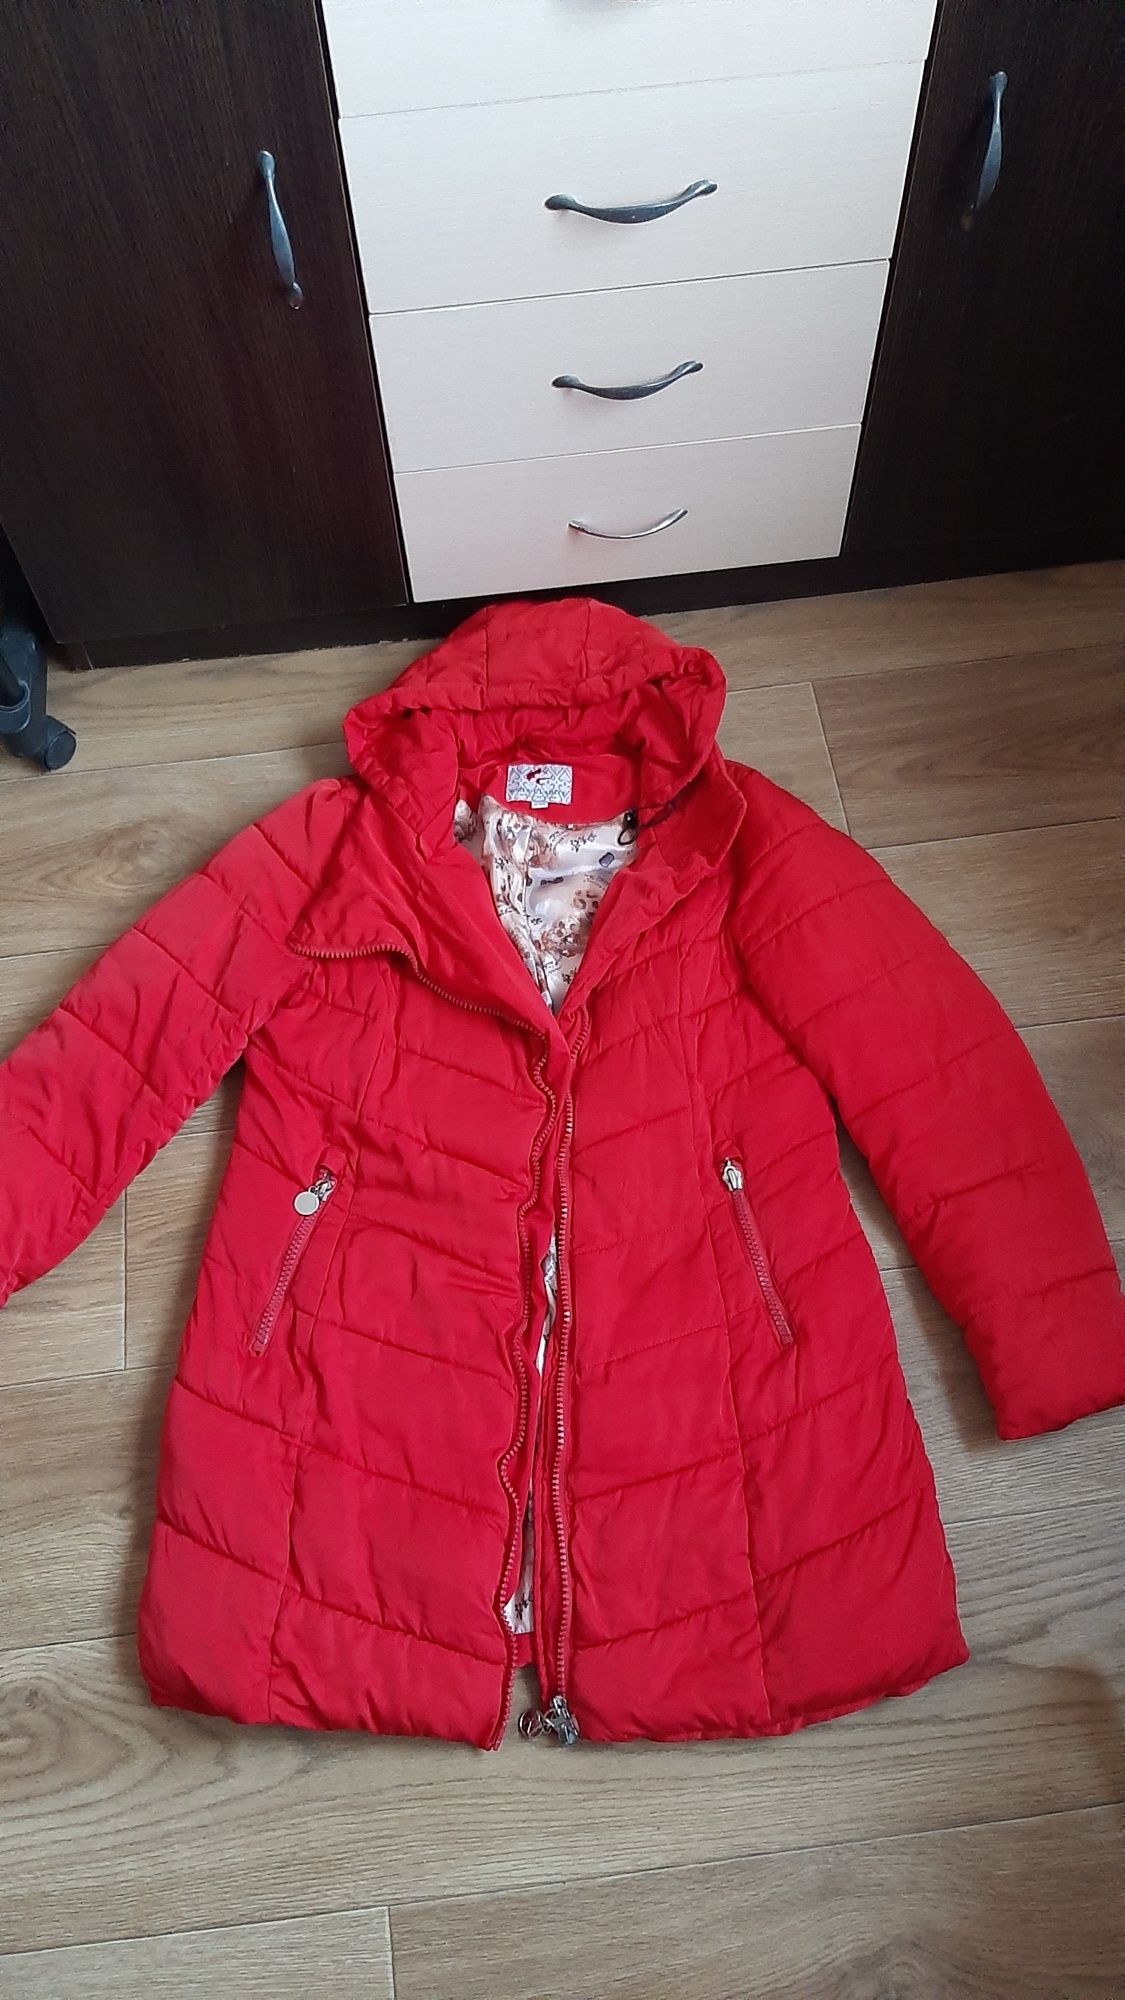 Куртка -термо зима 52-54-56р.Пальто ,куртка плащ